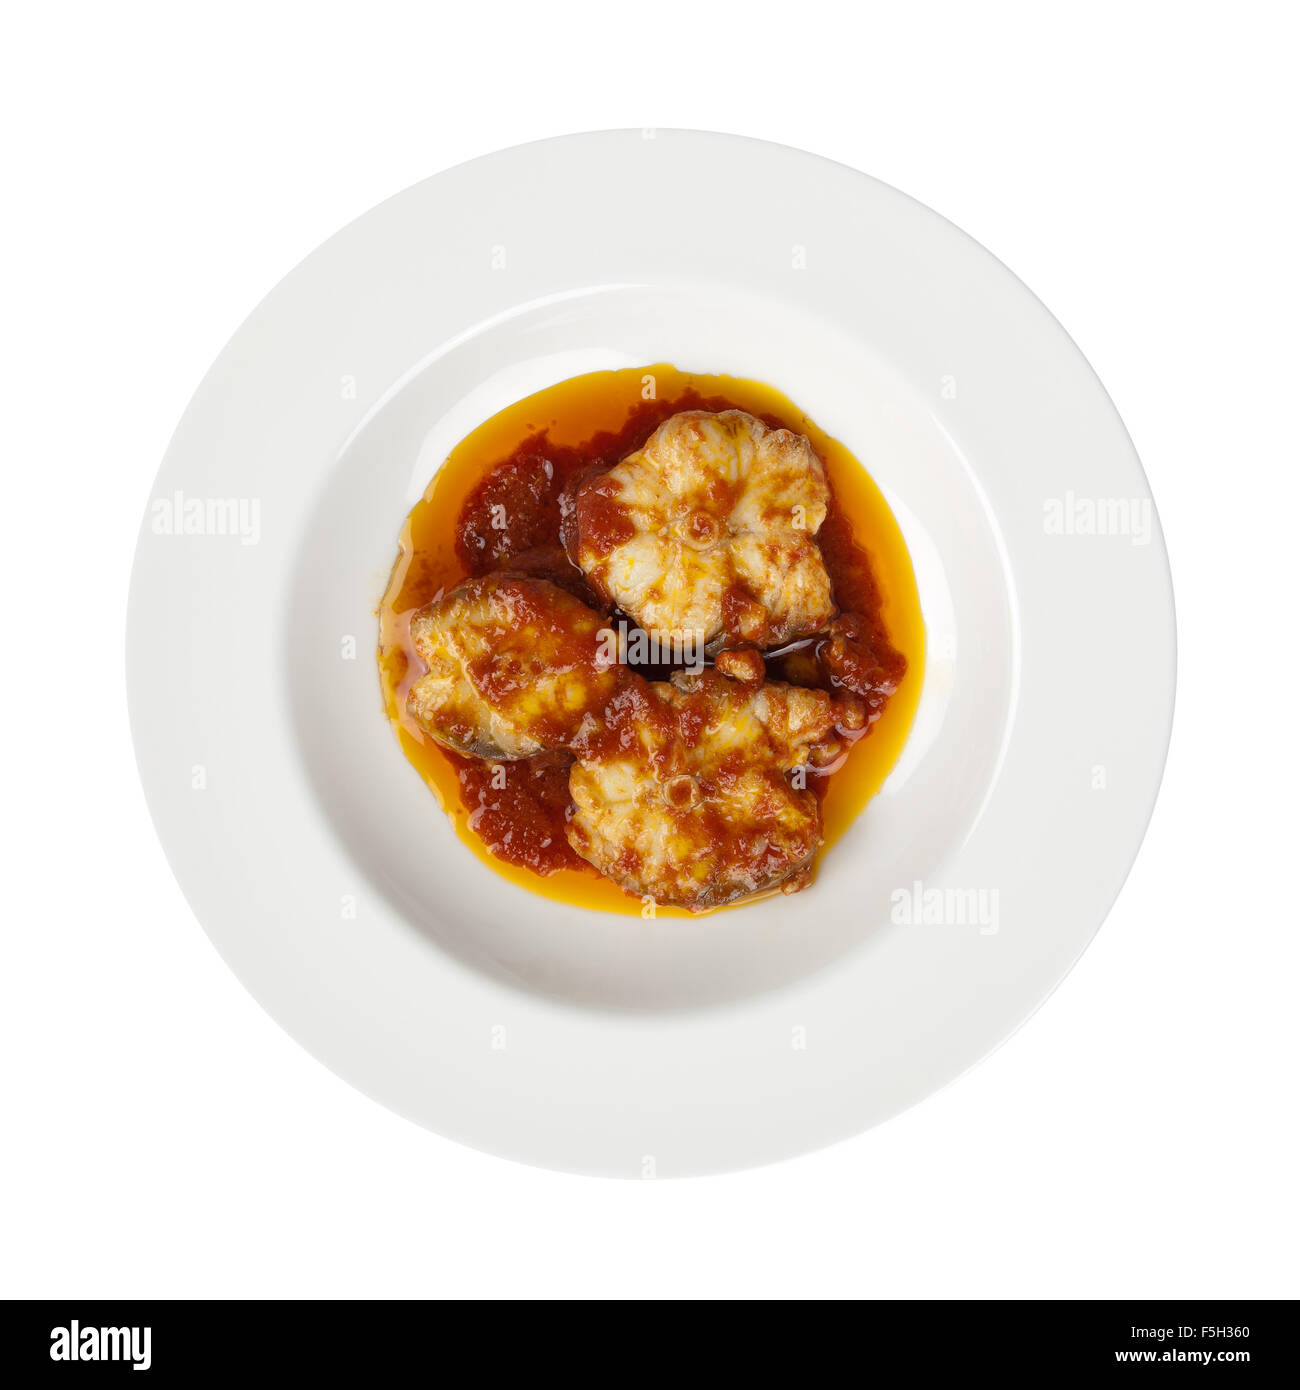 Fisch in Scheiben geschnitten, Tomaten, Olivenöl und Knoblauch auf Runde Platte, italienischer Meeresfrüchte nach traditionellem Rezept bekannt als Palombo Alla Livornese Stockfoto